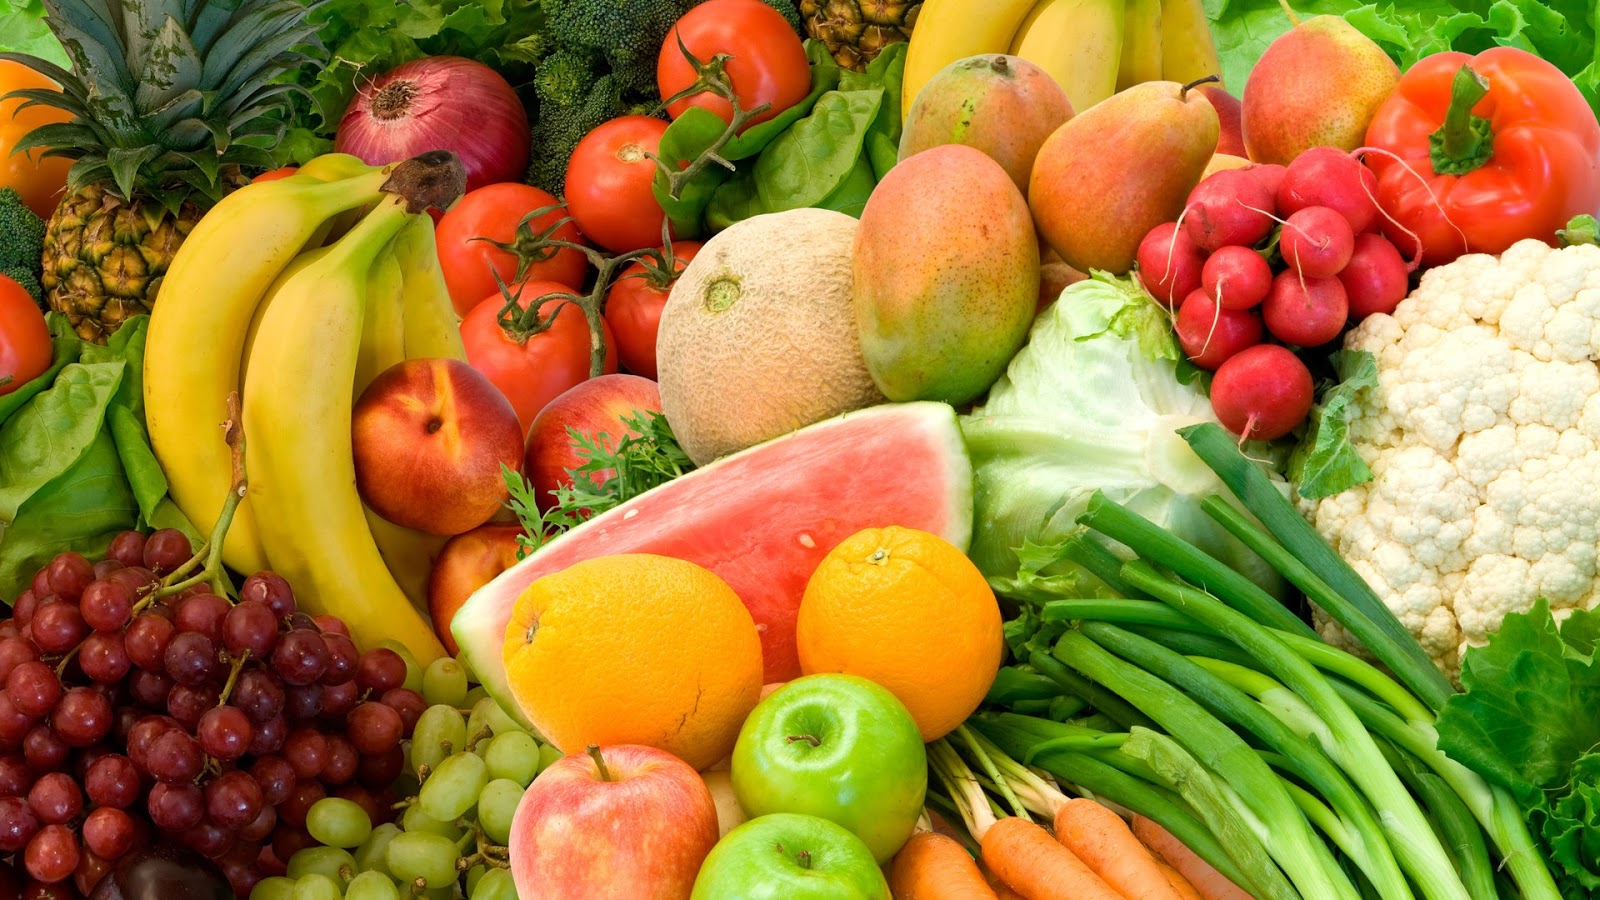 pertanian online: Manfaat Buah dan Sayur Untuk Kesehatan Tubuh